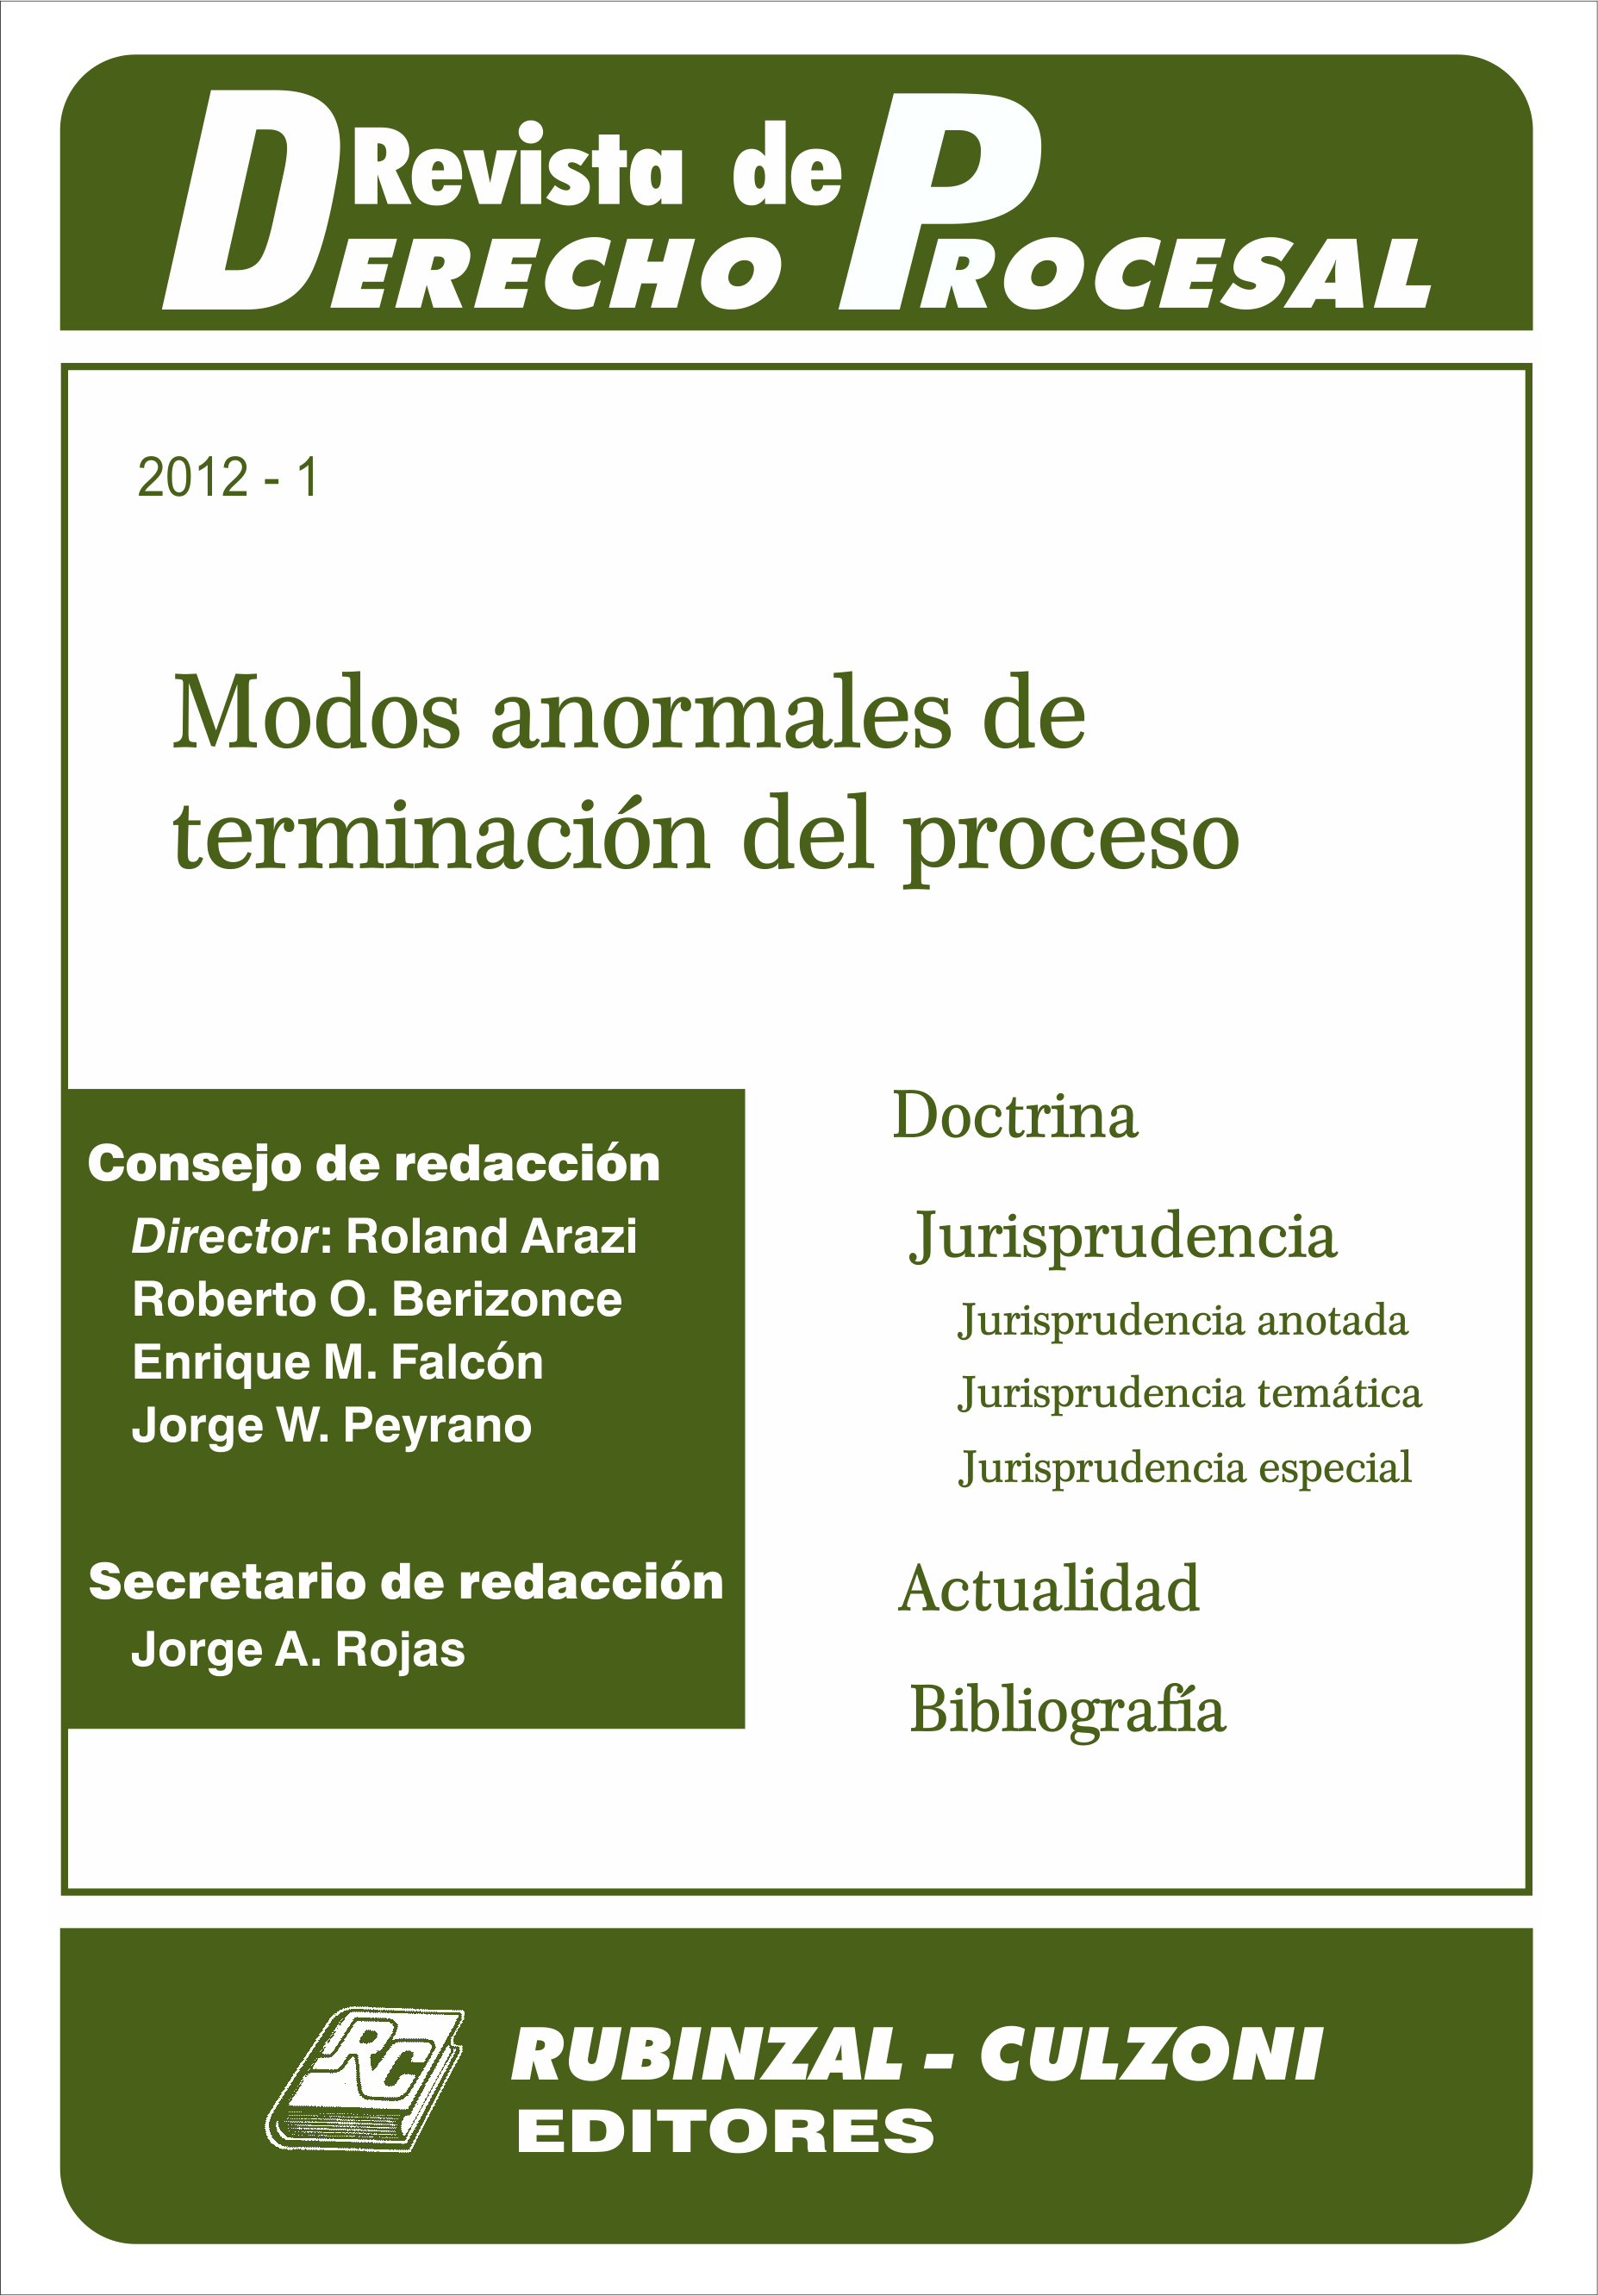 Revista de Derecho Procesal - Modos anormales de terminación del proceso